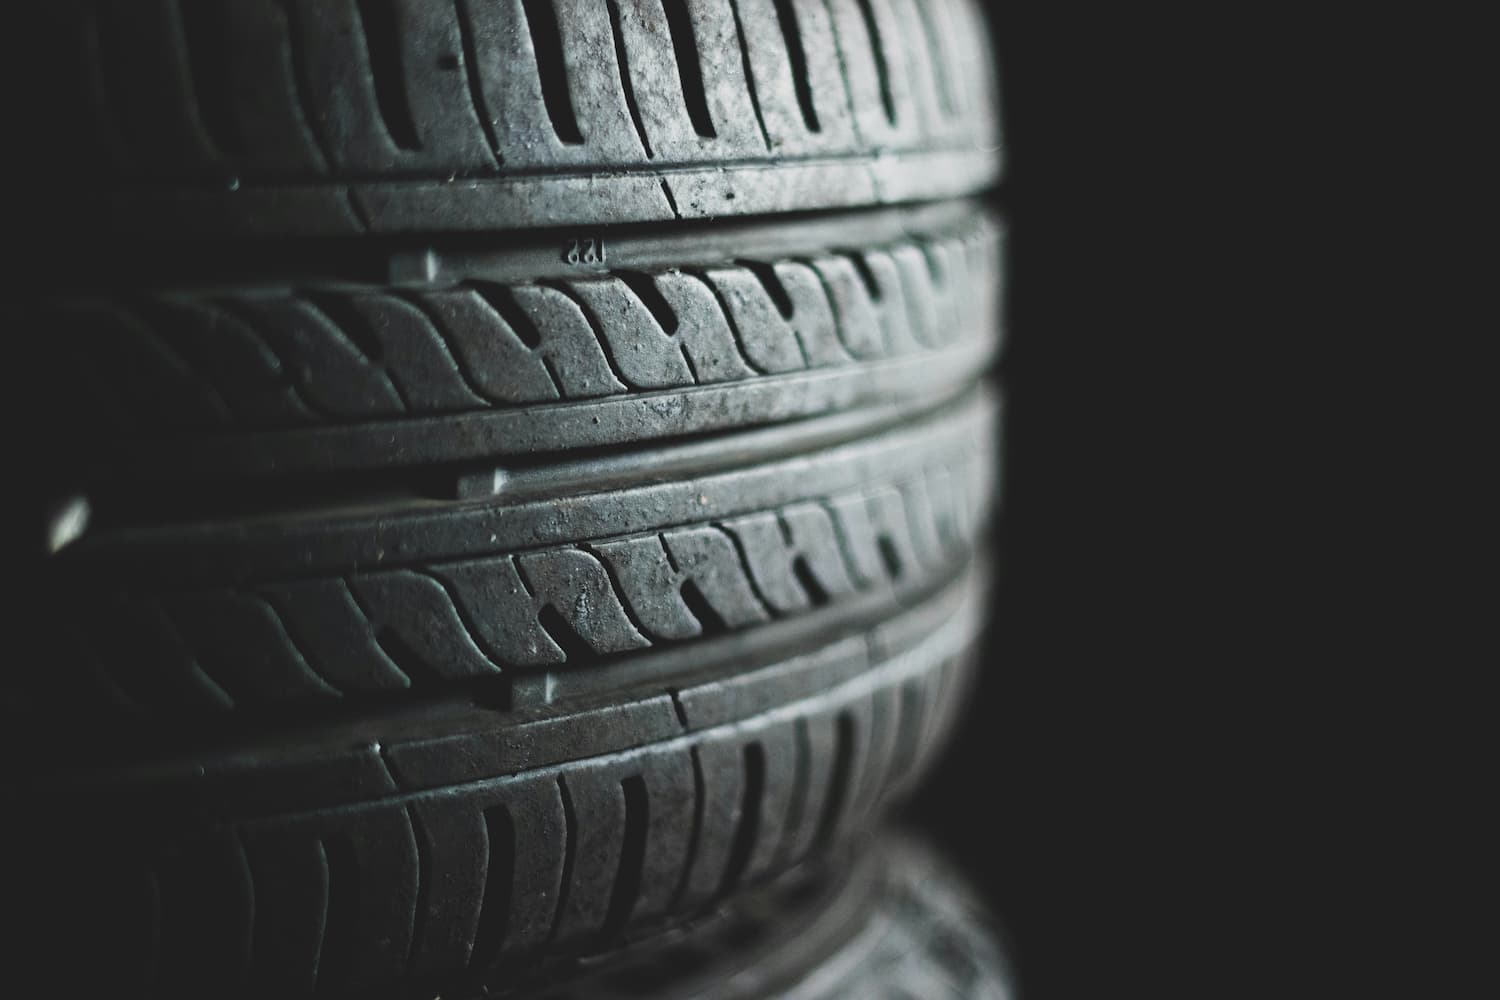 Detalhe dos sulcos na banda de rodagem de um pneu, essenciais para a tração e segurança do veículo.